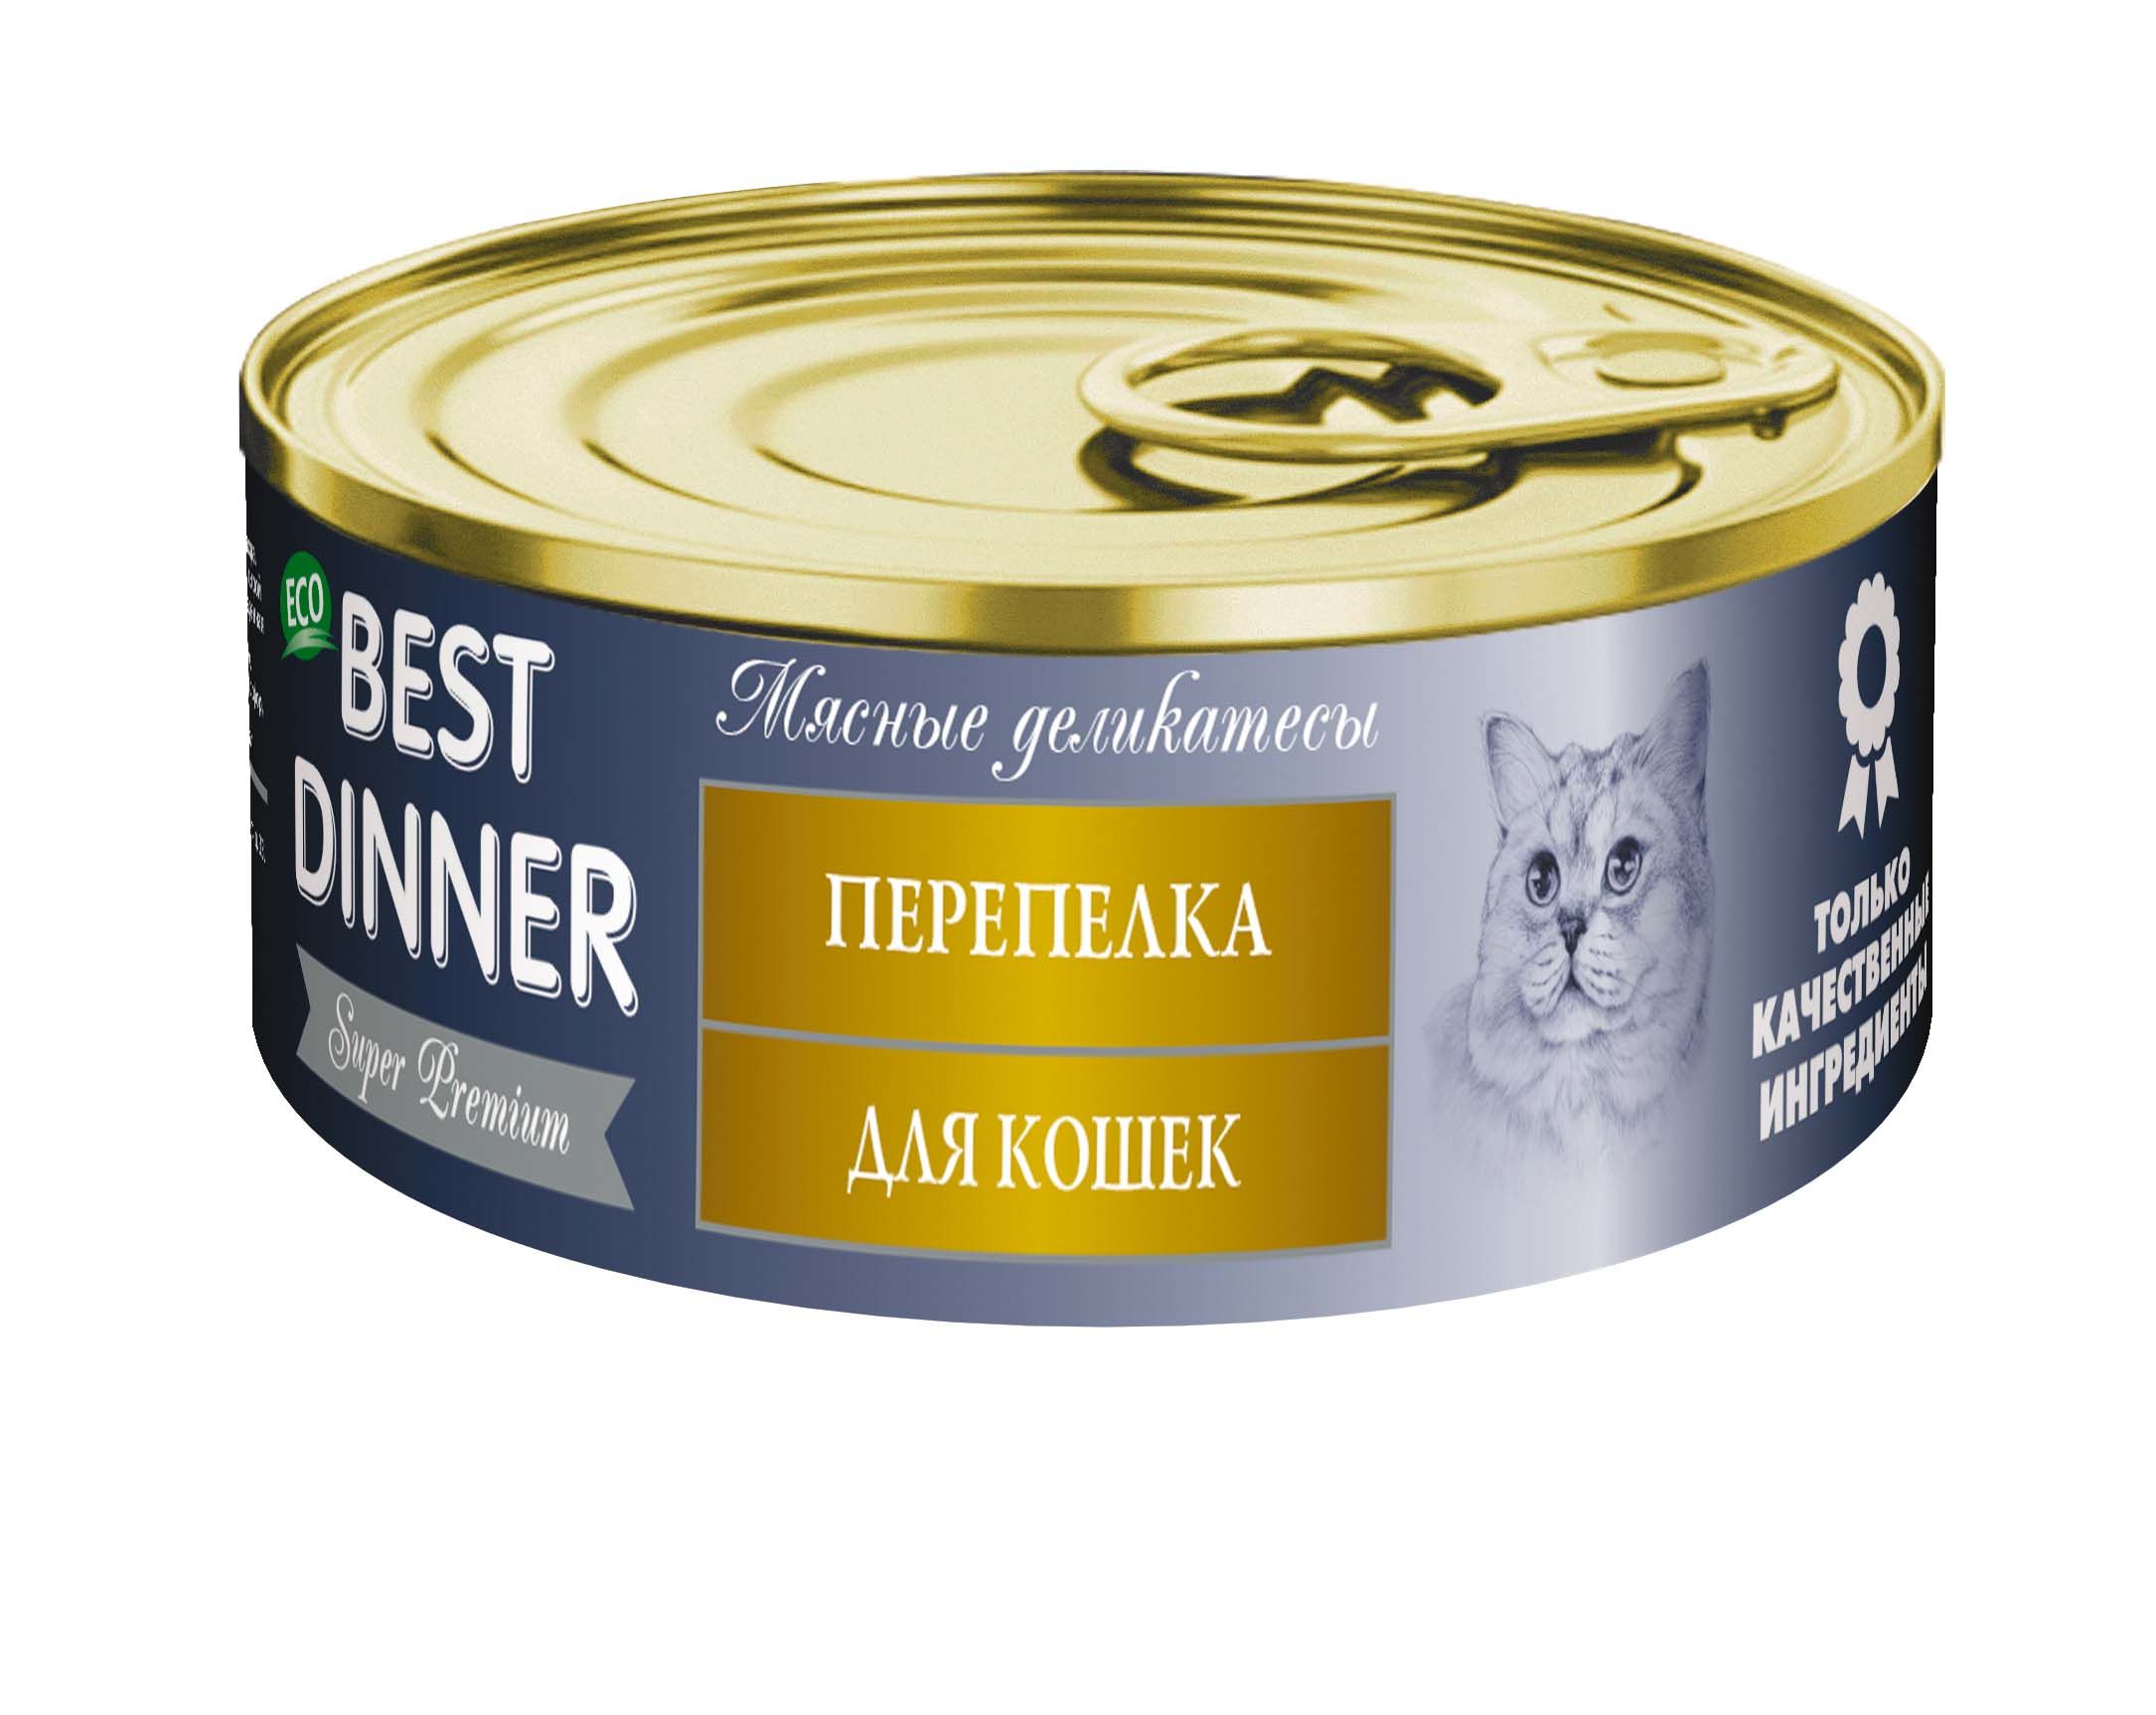 Best Dinner Мясные деликатесы Перепелка конс для кошек 100 г 1